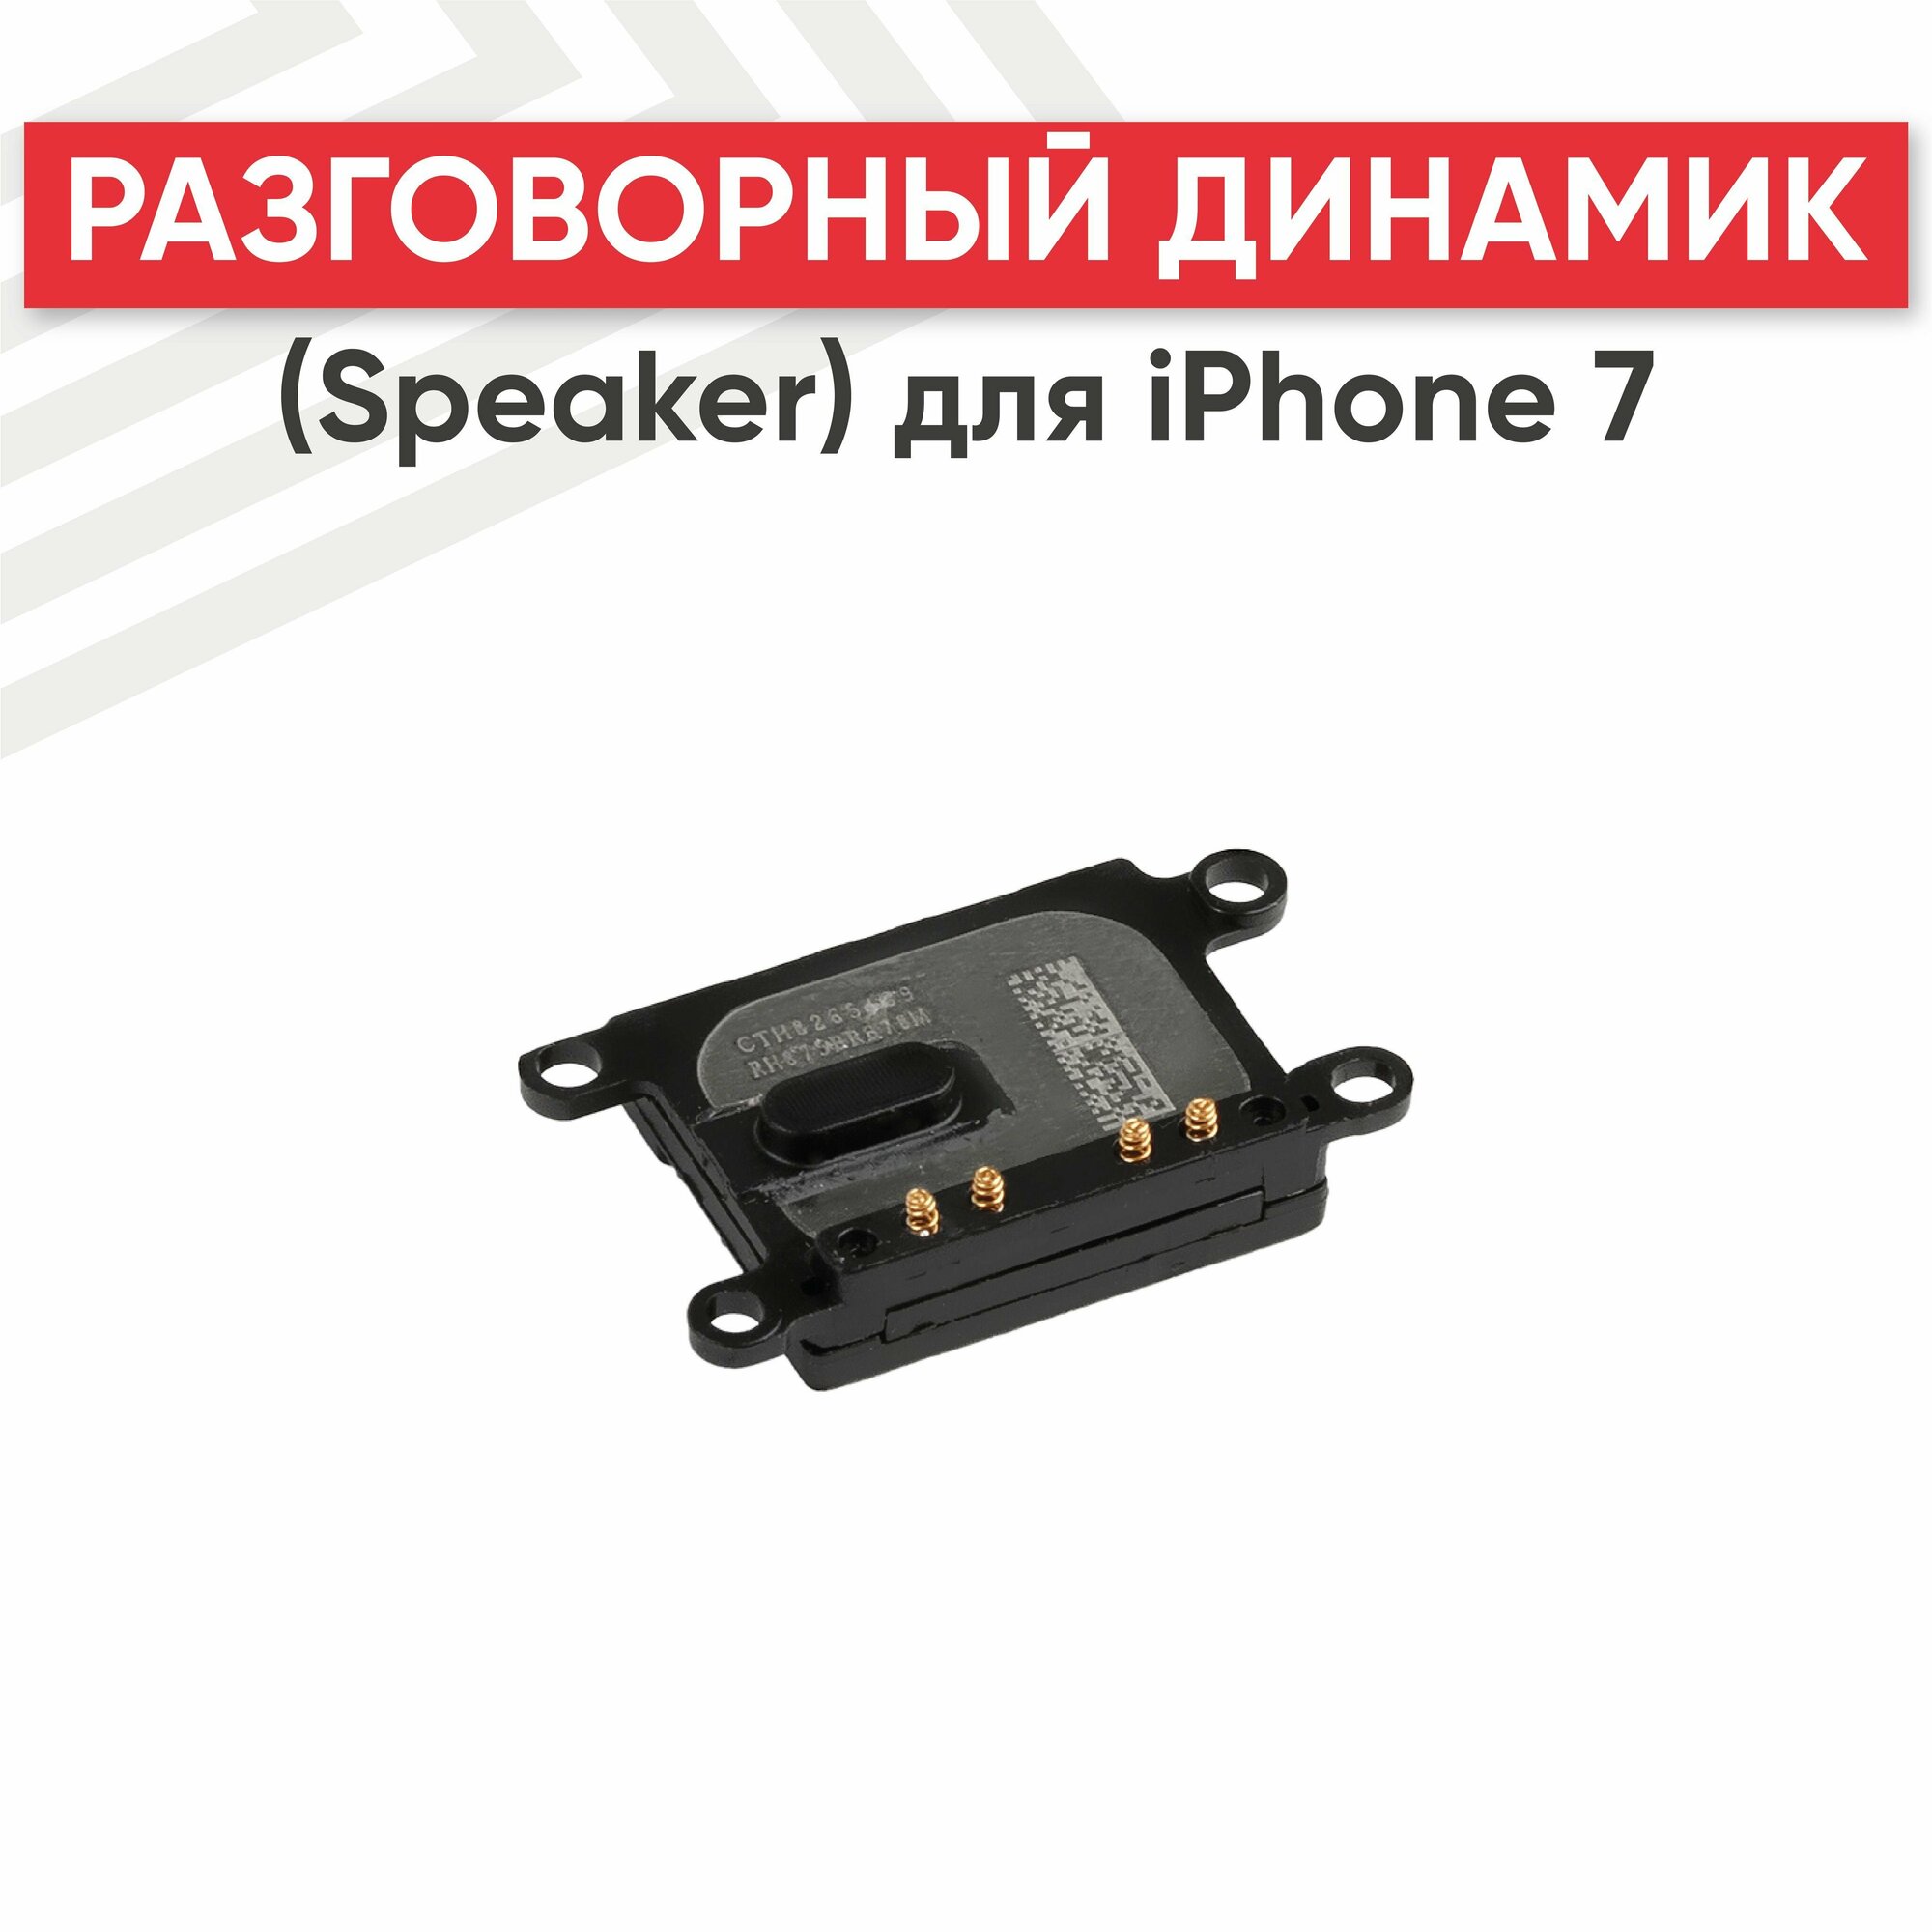 Разговорный динамик (Speaker) RageX для iPhone 7